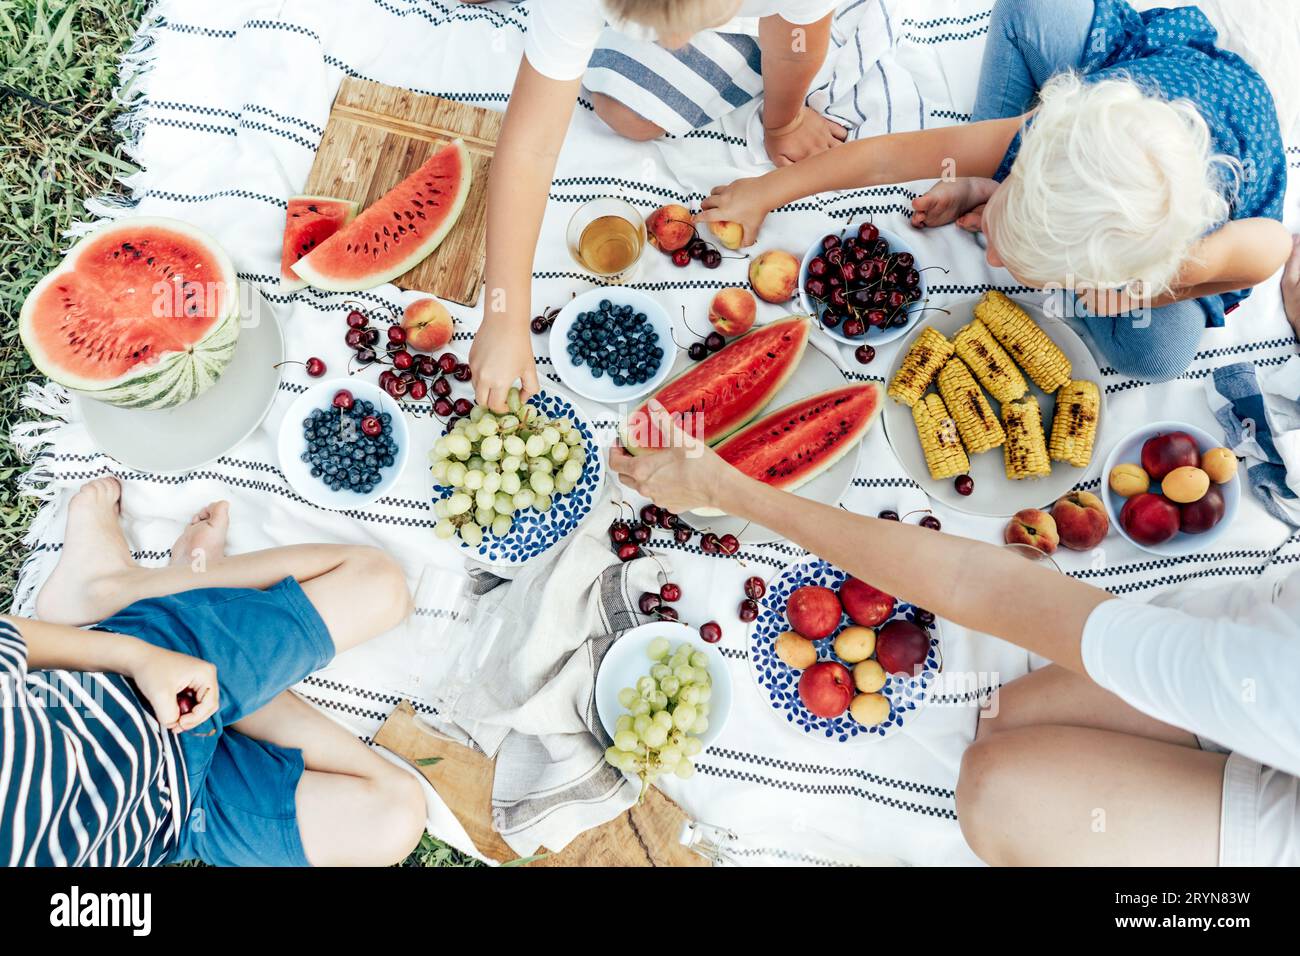 Blick von oben auf eine Picknick-Tischdecke gefüllt mit Tellern mit Beeren und Früchten Stockfoto